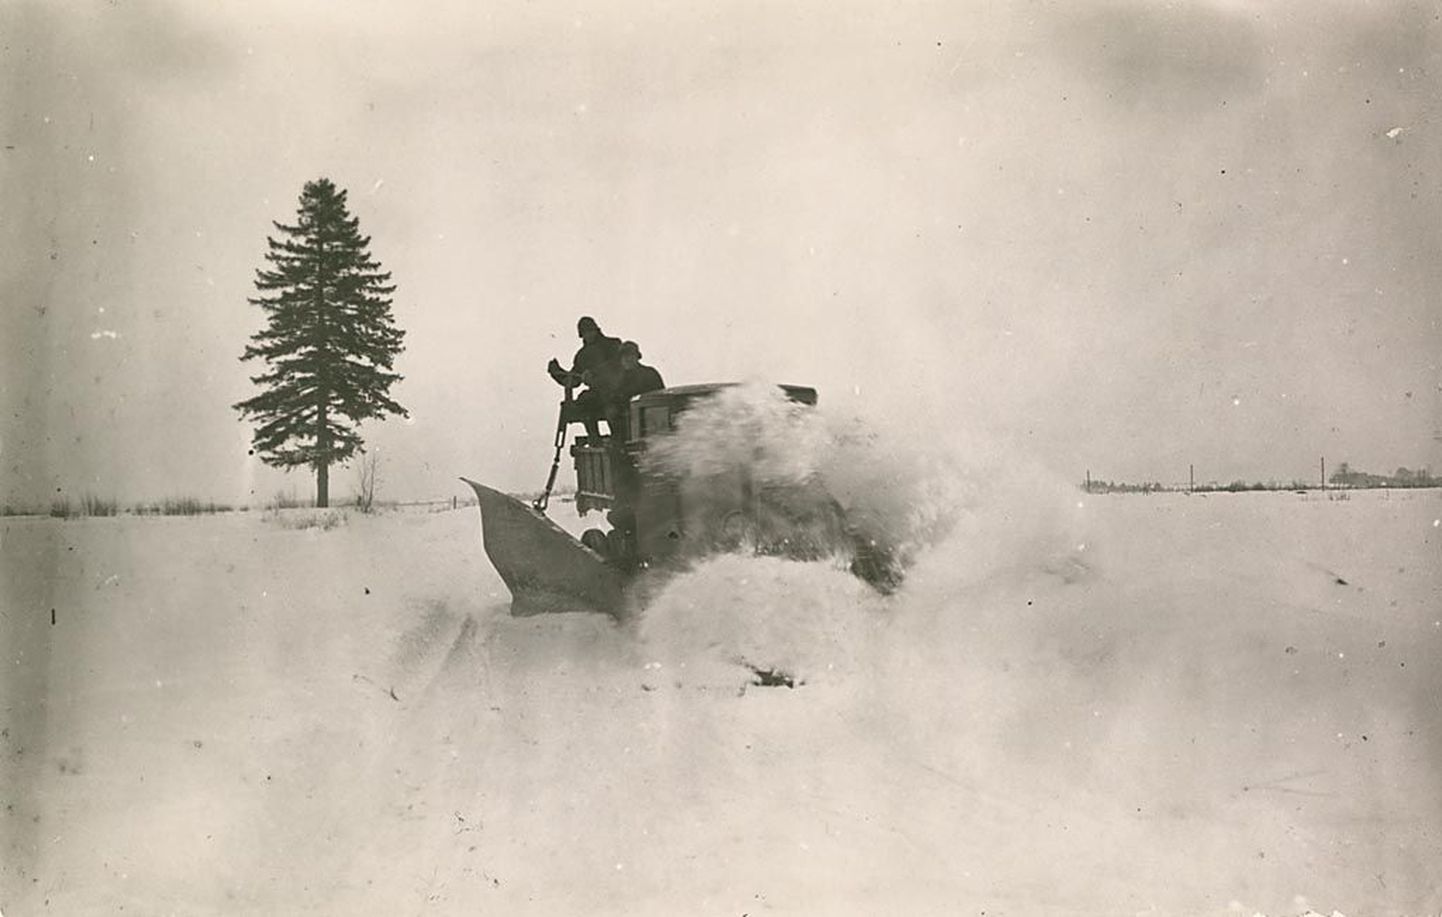 Maavalitsuse lumesahk töös Pärnumaal 1930. aastal. Raha lumekoristuseks nappis siis nagu nüüdki.